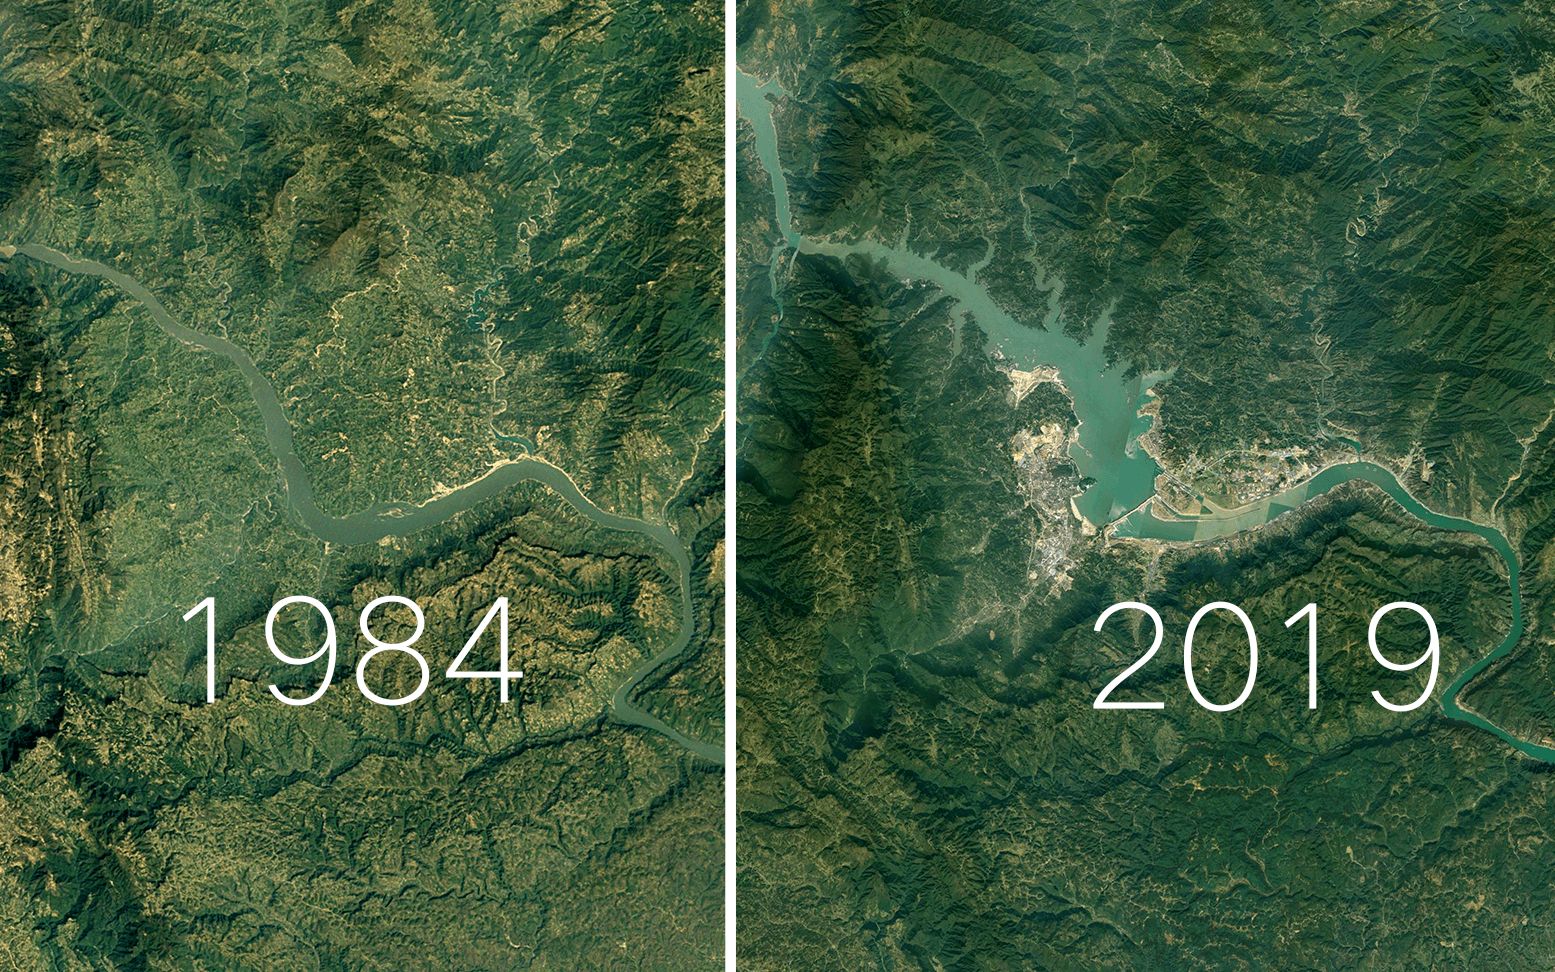 三峡大坝的寿命究竟有多久?建成15年了,2500亿投资收回来了吗?